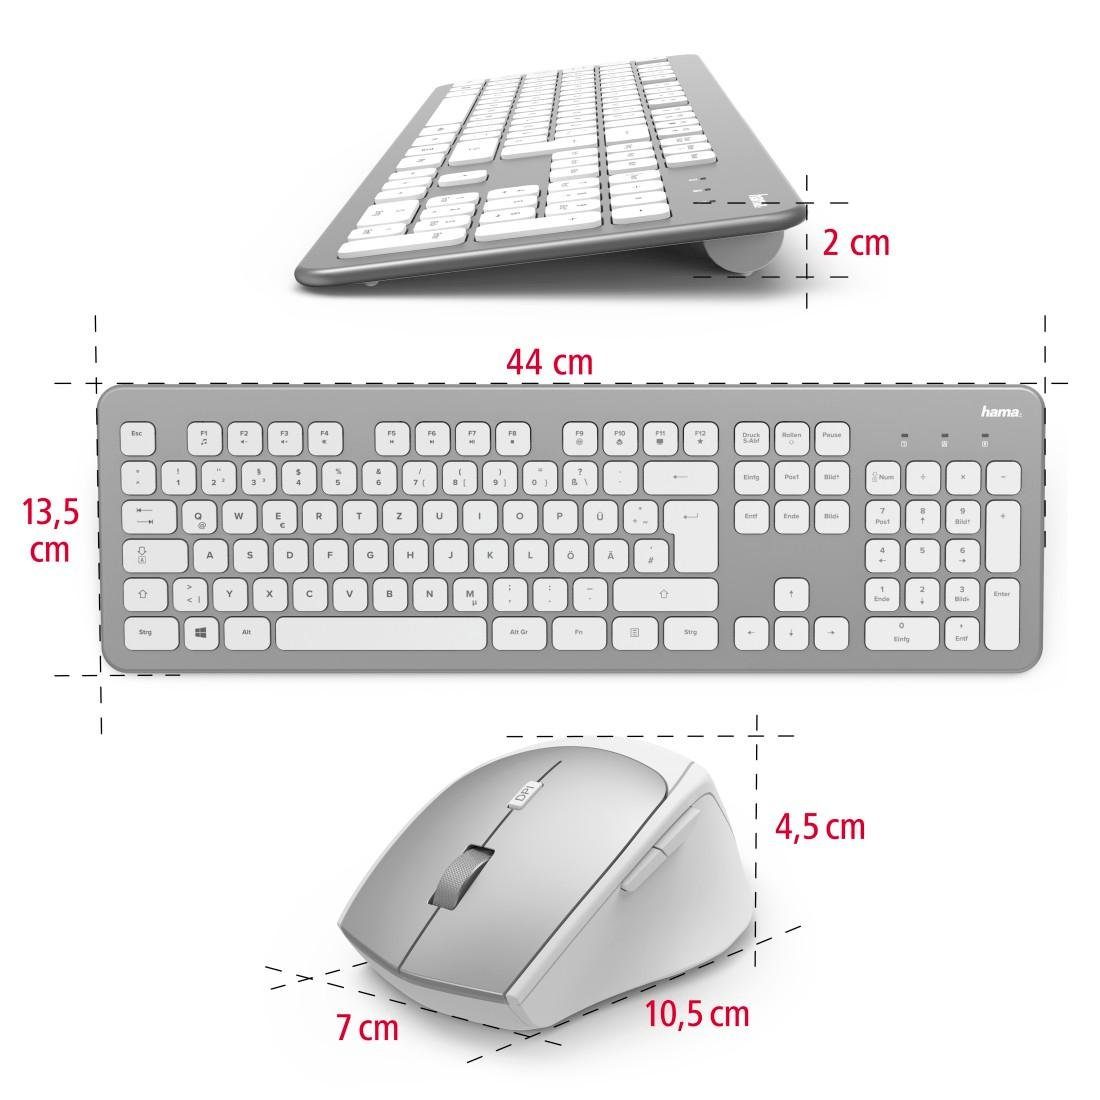 Hama Funktastatur-/Maus-Set "KMW-700" Tastatur/Maus-Set Tastatur- und Maus-Set weiß